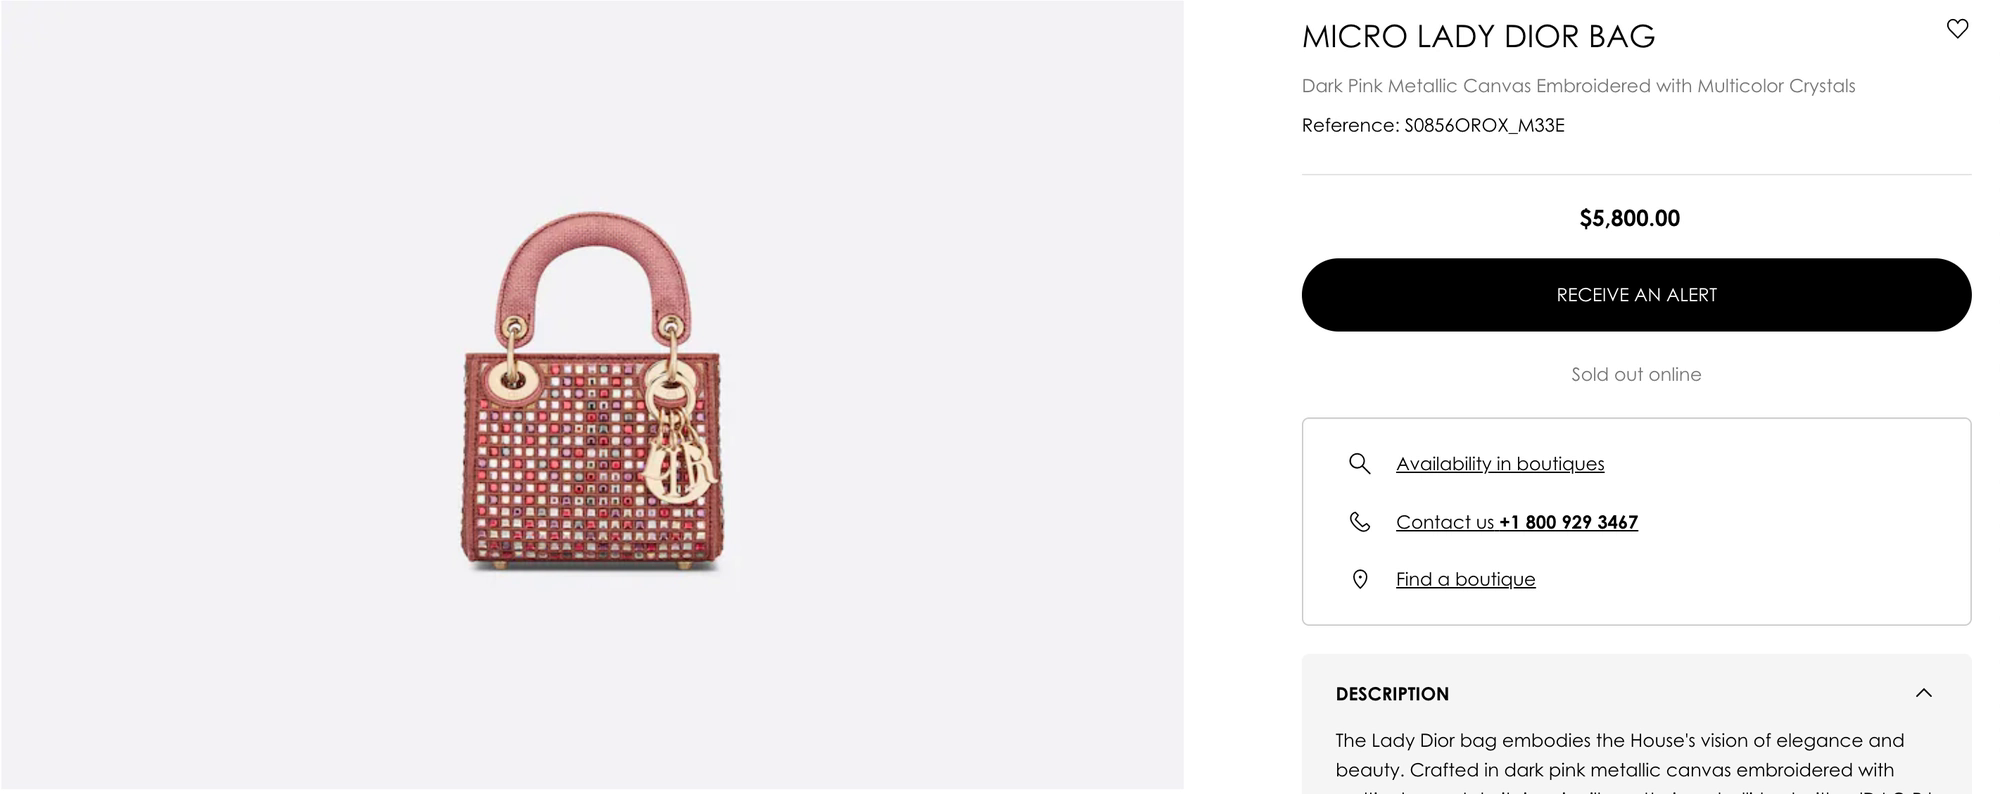 Shopping kiểu nhà giàu: 'Tiểu thư lâu đài trắng' Chloe Nguyễn 'chốt đơn' thần tốc chiếc túi 5800€ - Ảnh 6.